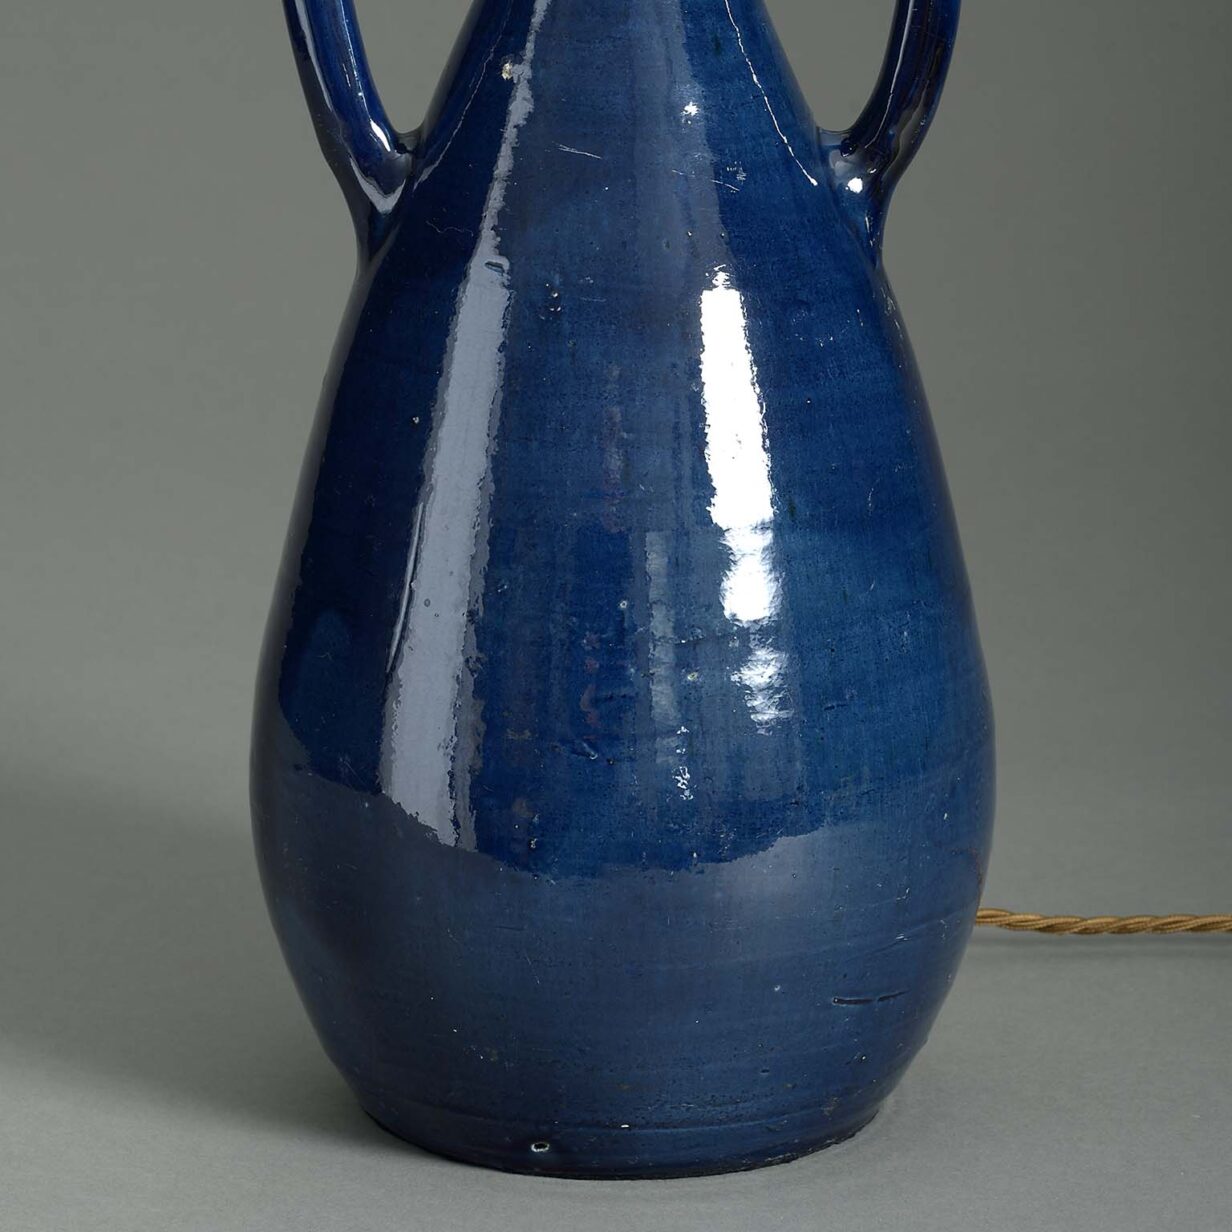 Blue glazed two-handled pottery vase lamp